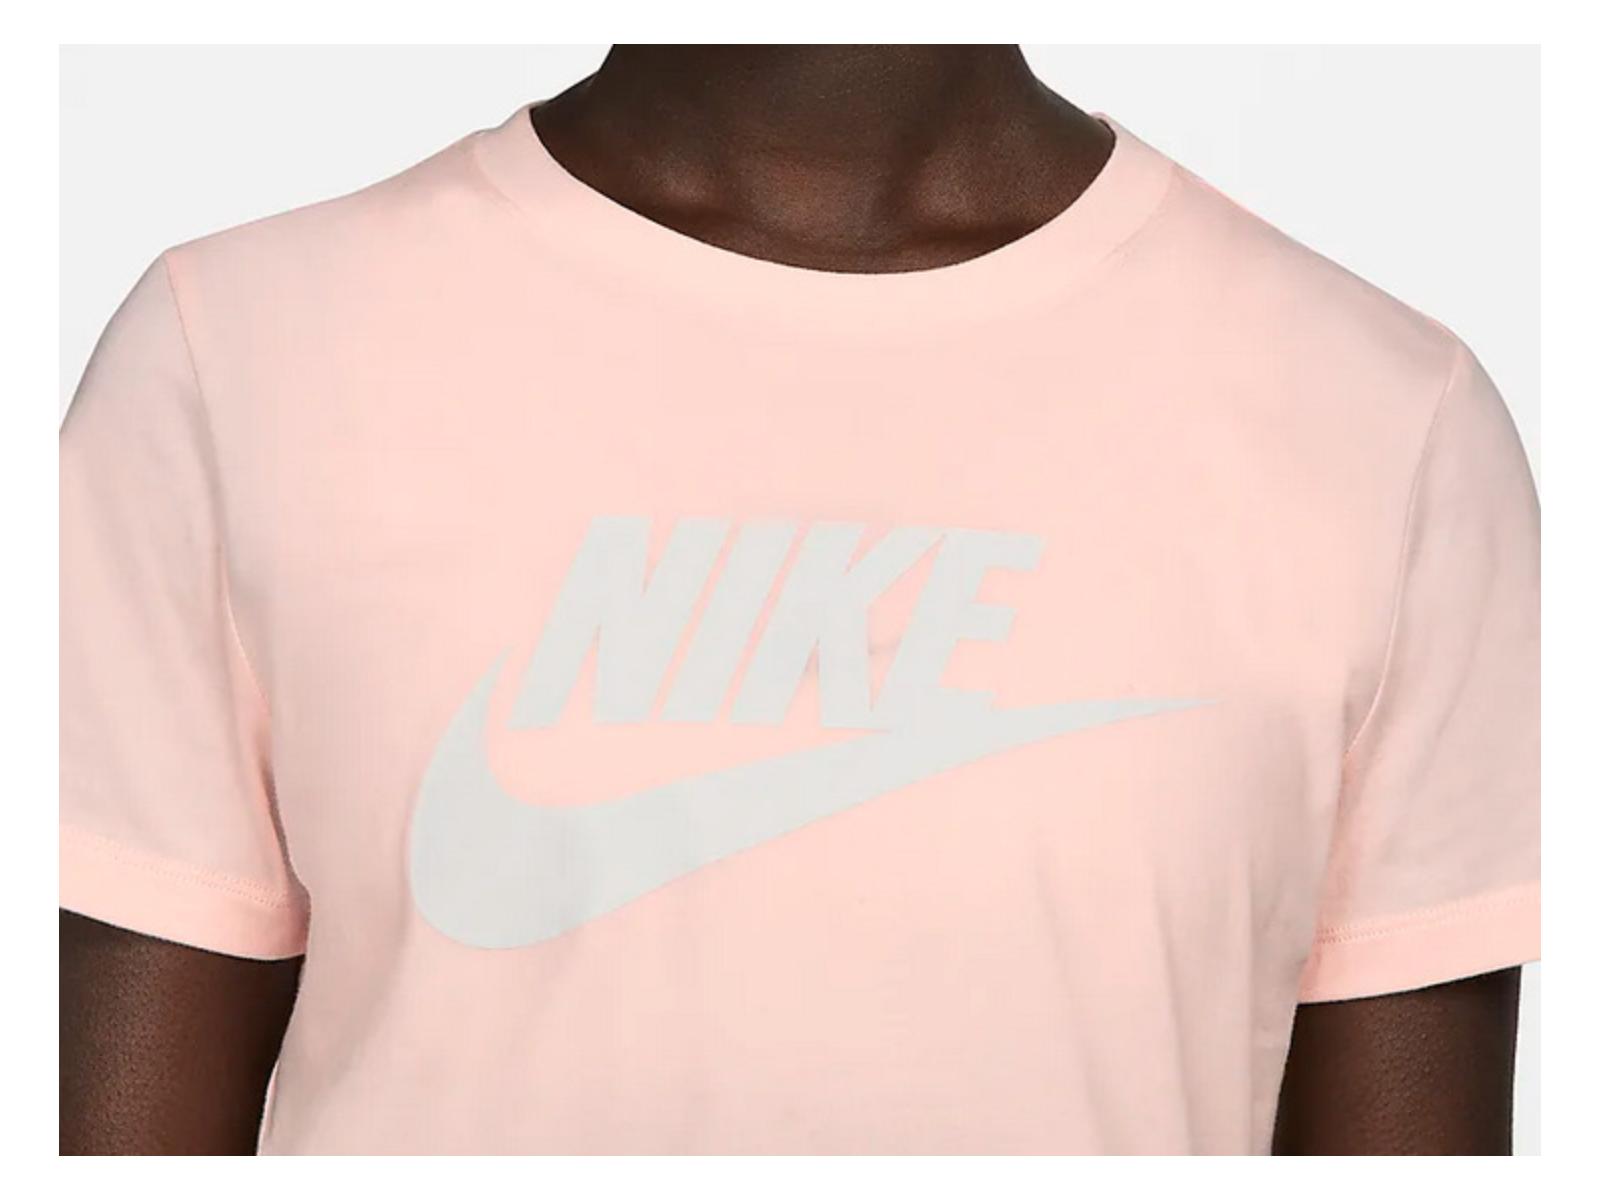 Camiseta Nike Sportswear Essential BV6169